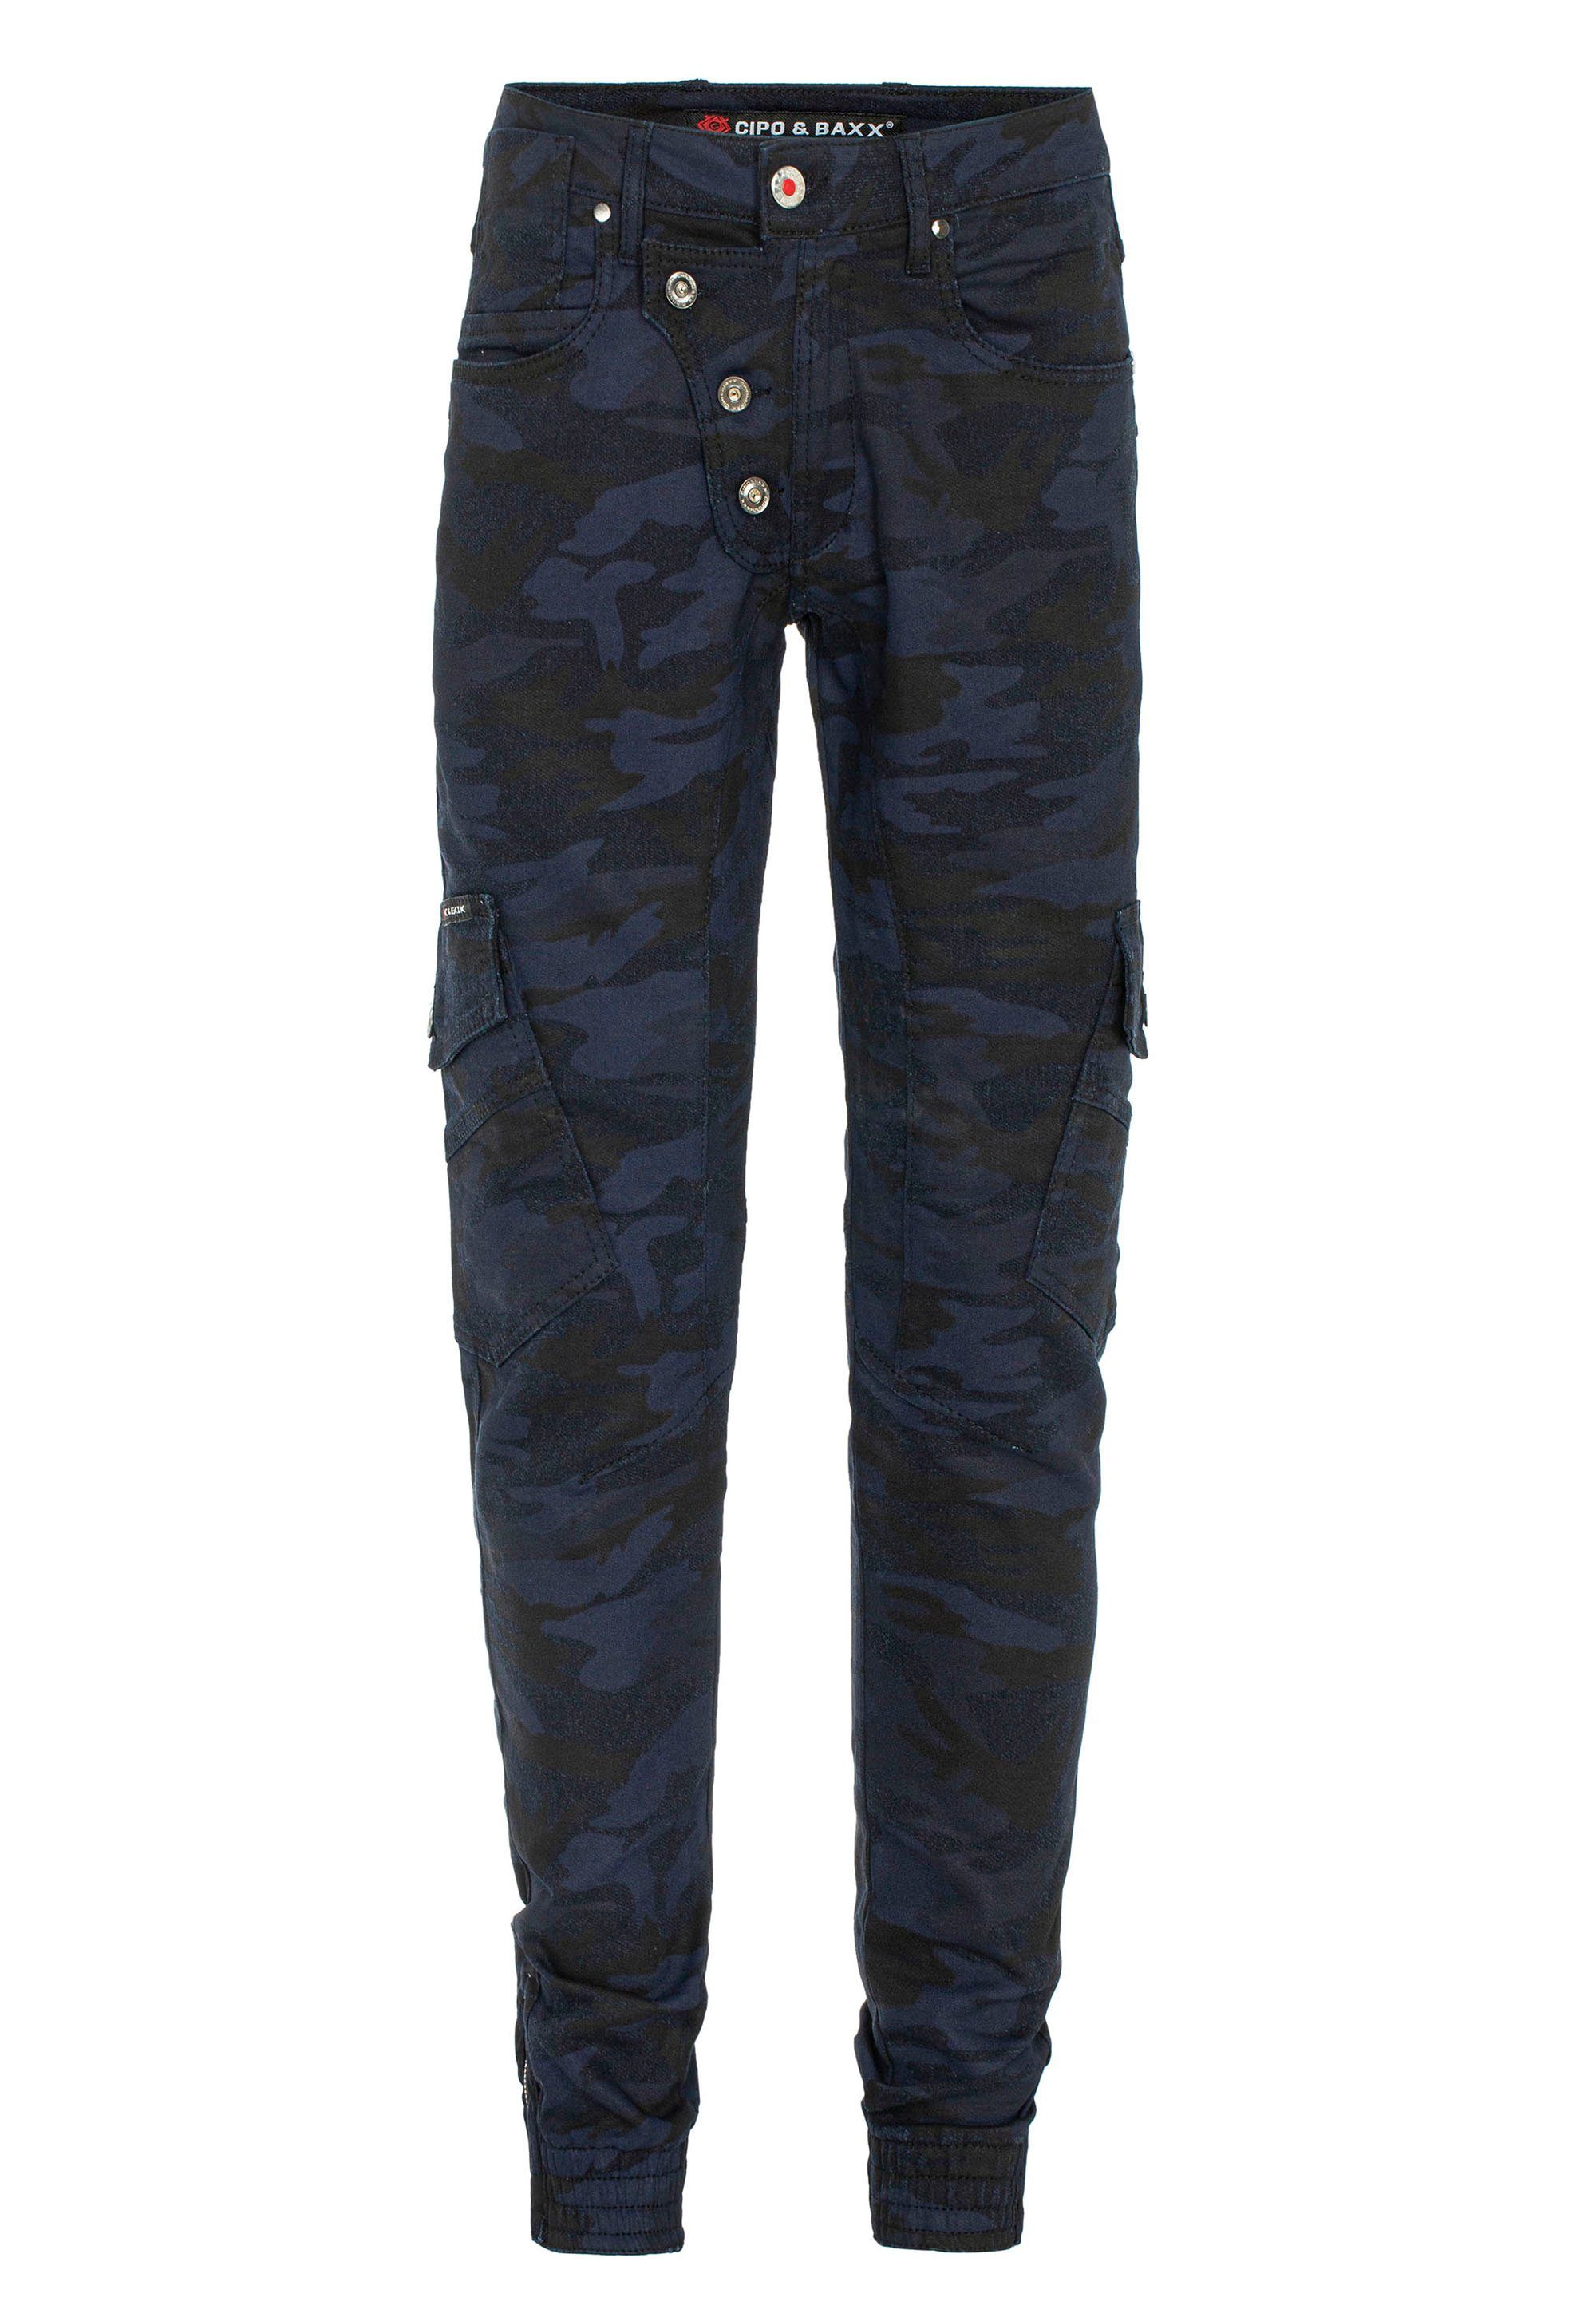 & Cipo Baxx mit Bequeme tollen Cargotaschen Jeans